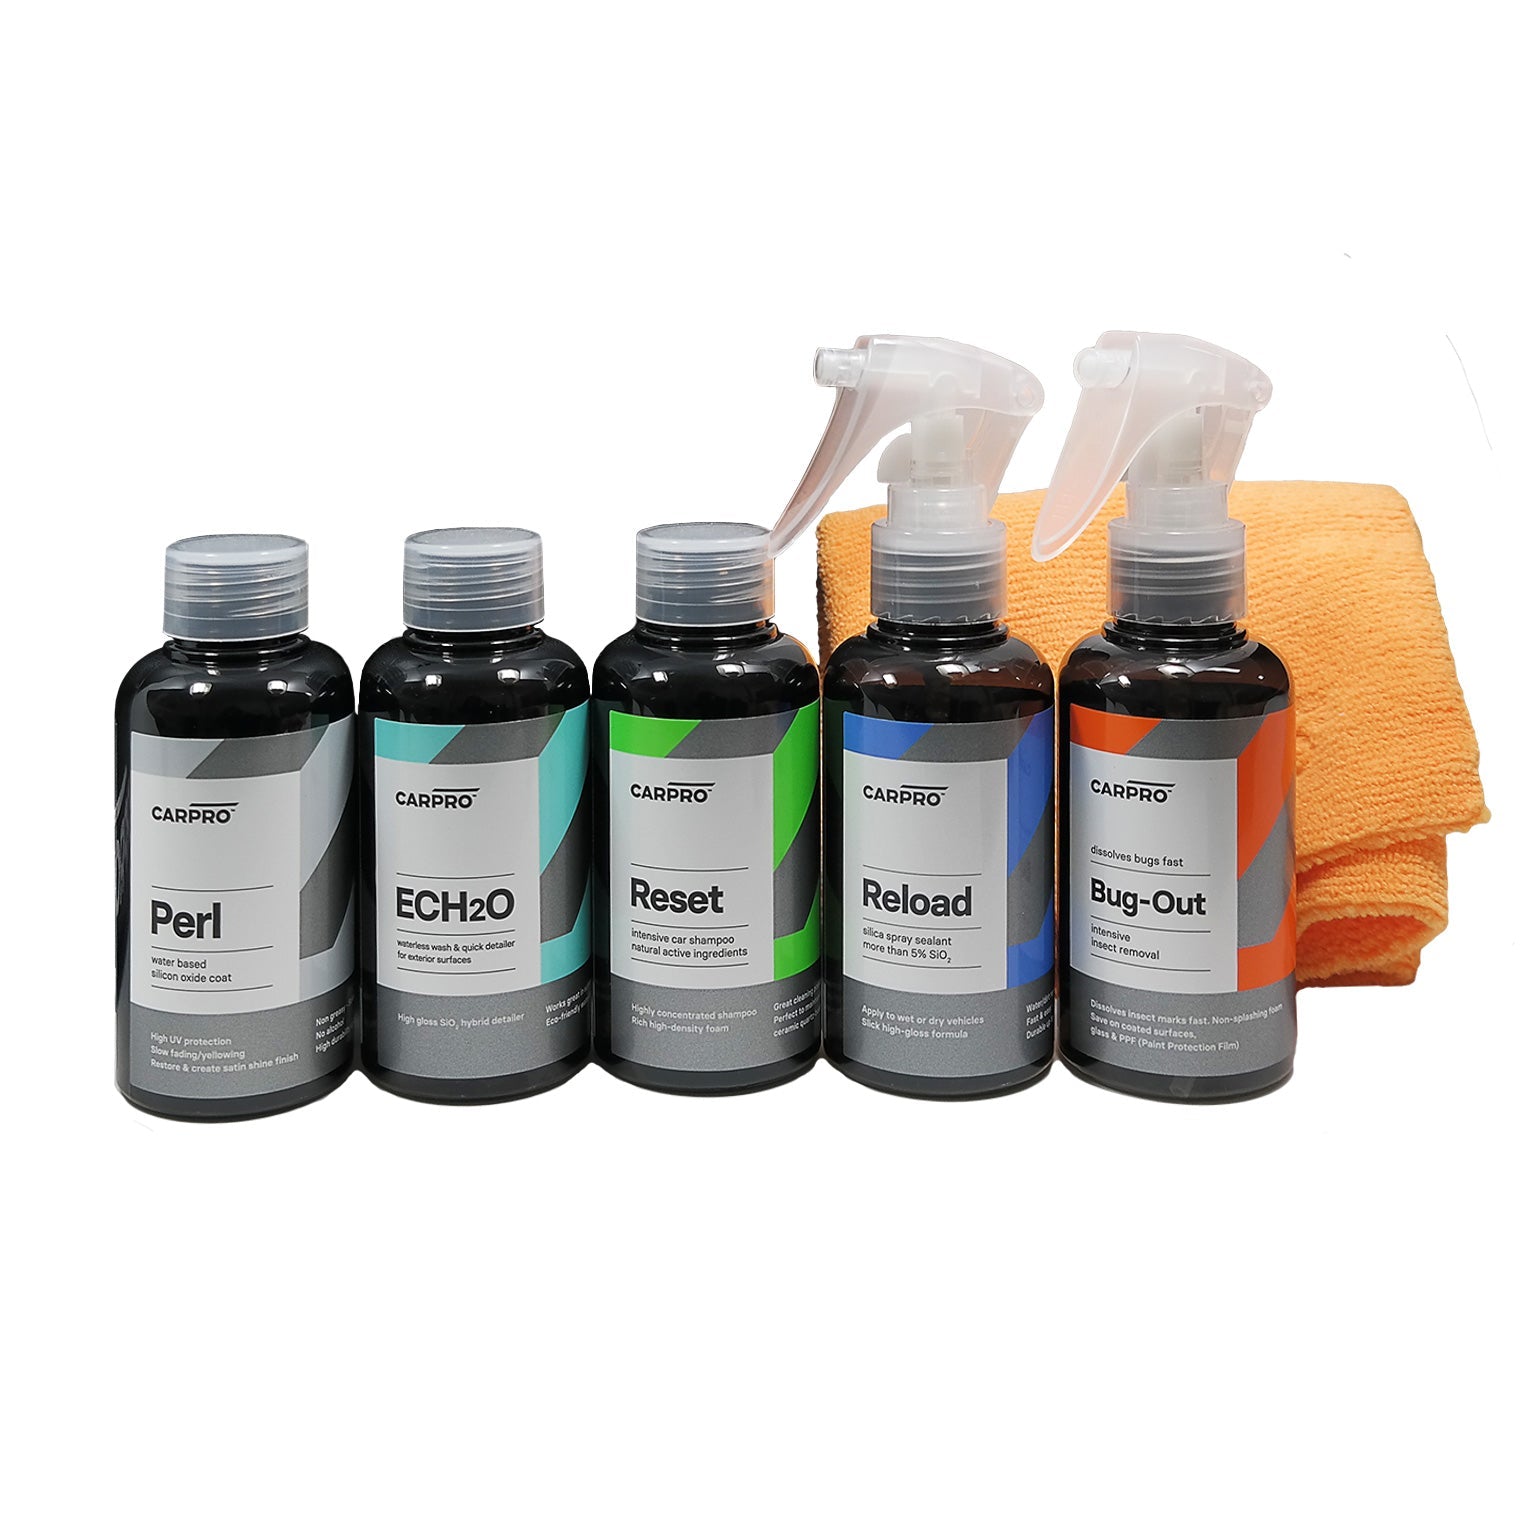  Set di cinque flaconi di prodotti CARPRO con due panni in microfibra arancioni, su sfondo bianco, per la cura e la manutenzione del veicolo.